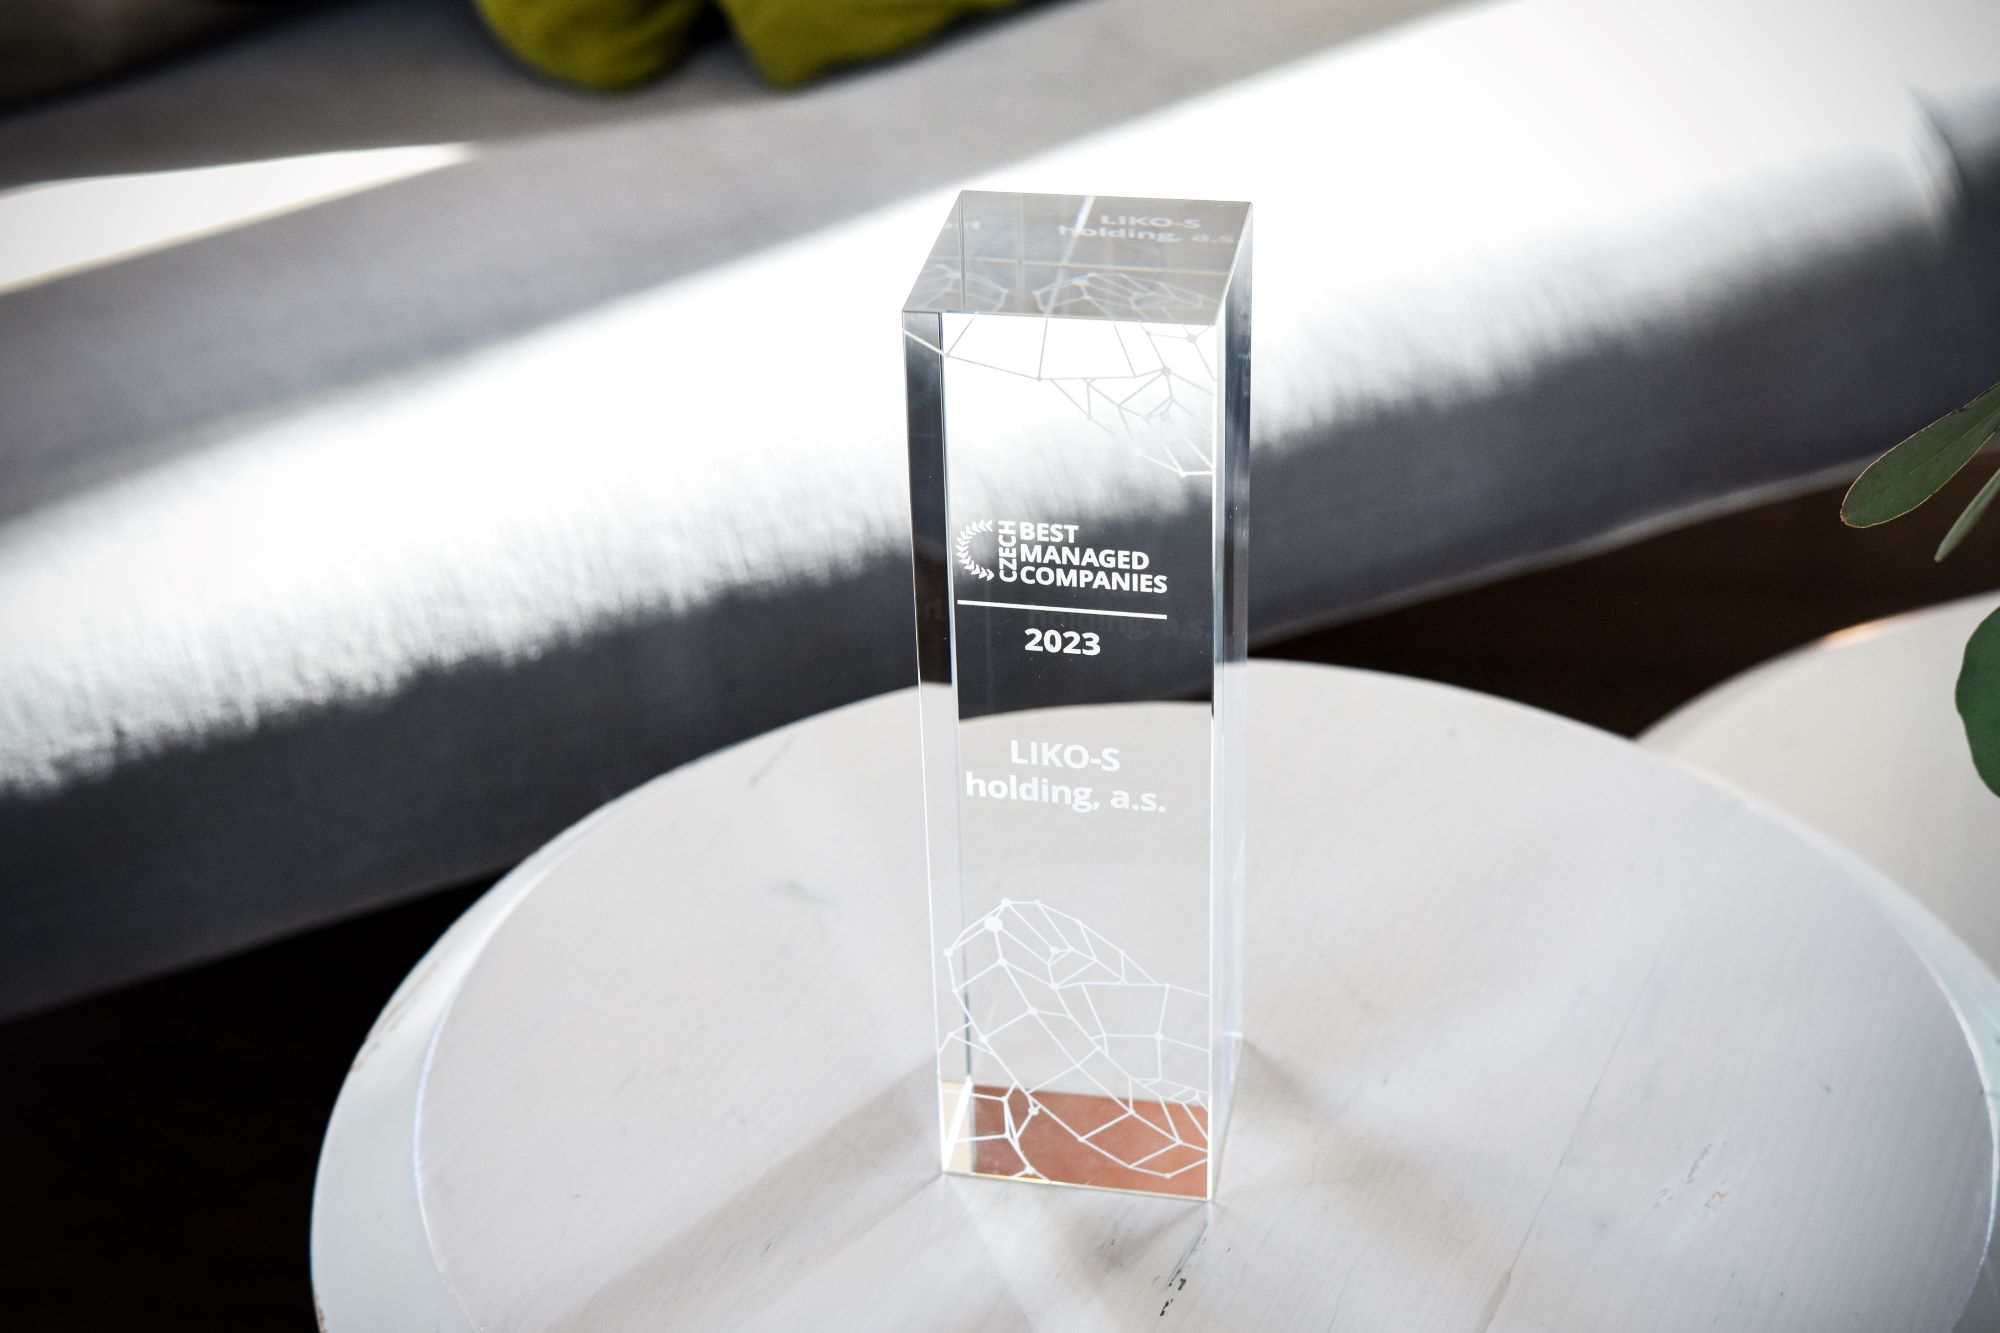 Cena Deloitte Best Managed Companies za nejlépe řízenou firmu České republiky